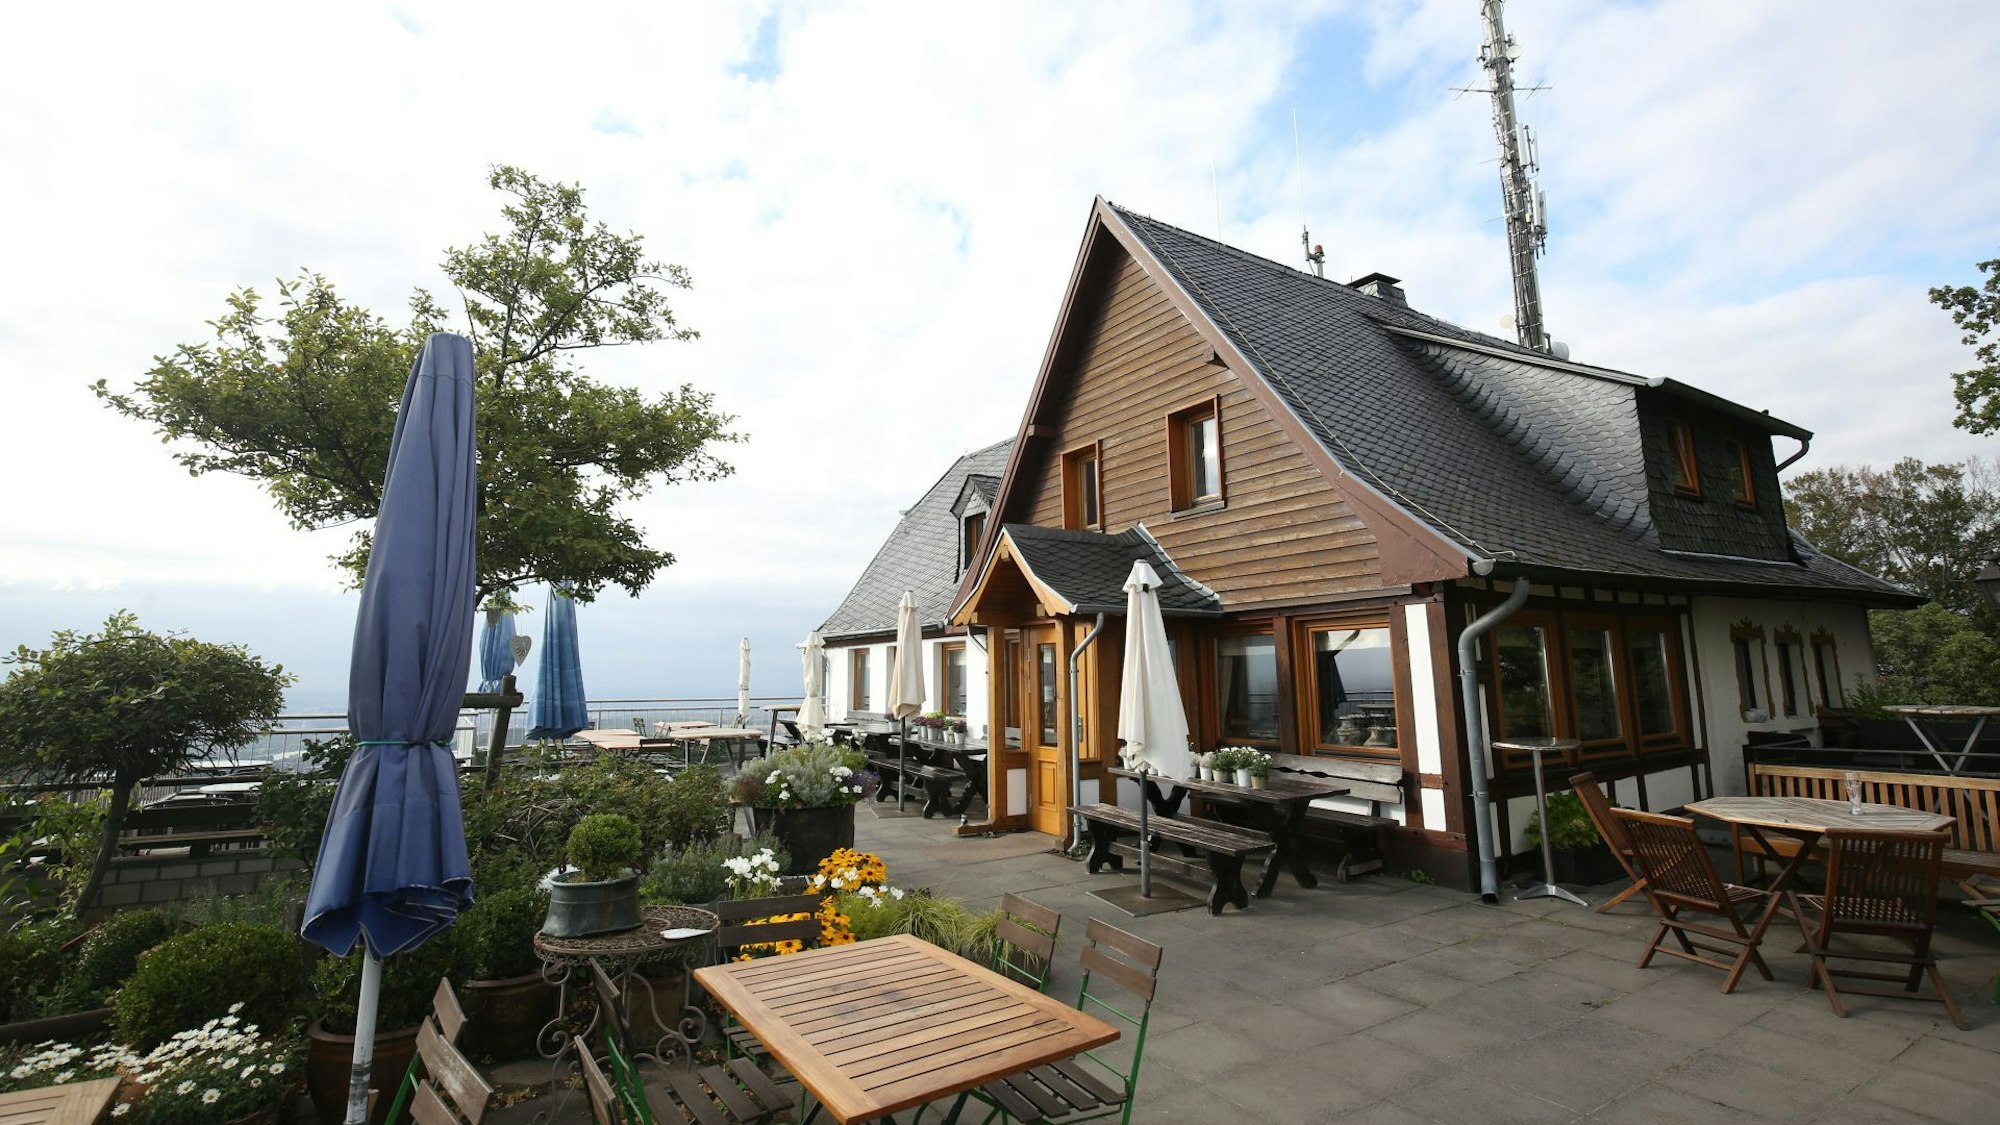 Ein holzverkleidetes Gasthaus, vor dem Holztische und Sonnenschirme stehen. Die Silhouette des Siebengebirges ist zu erkennen.